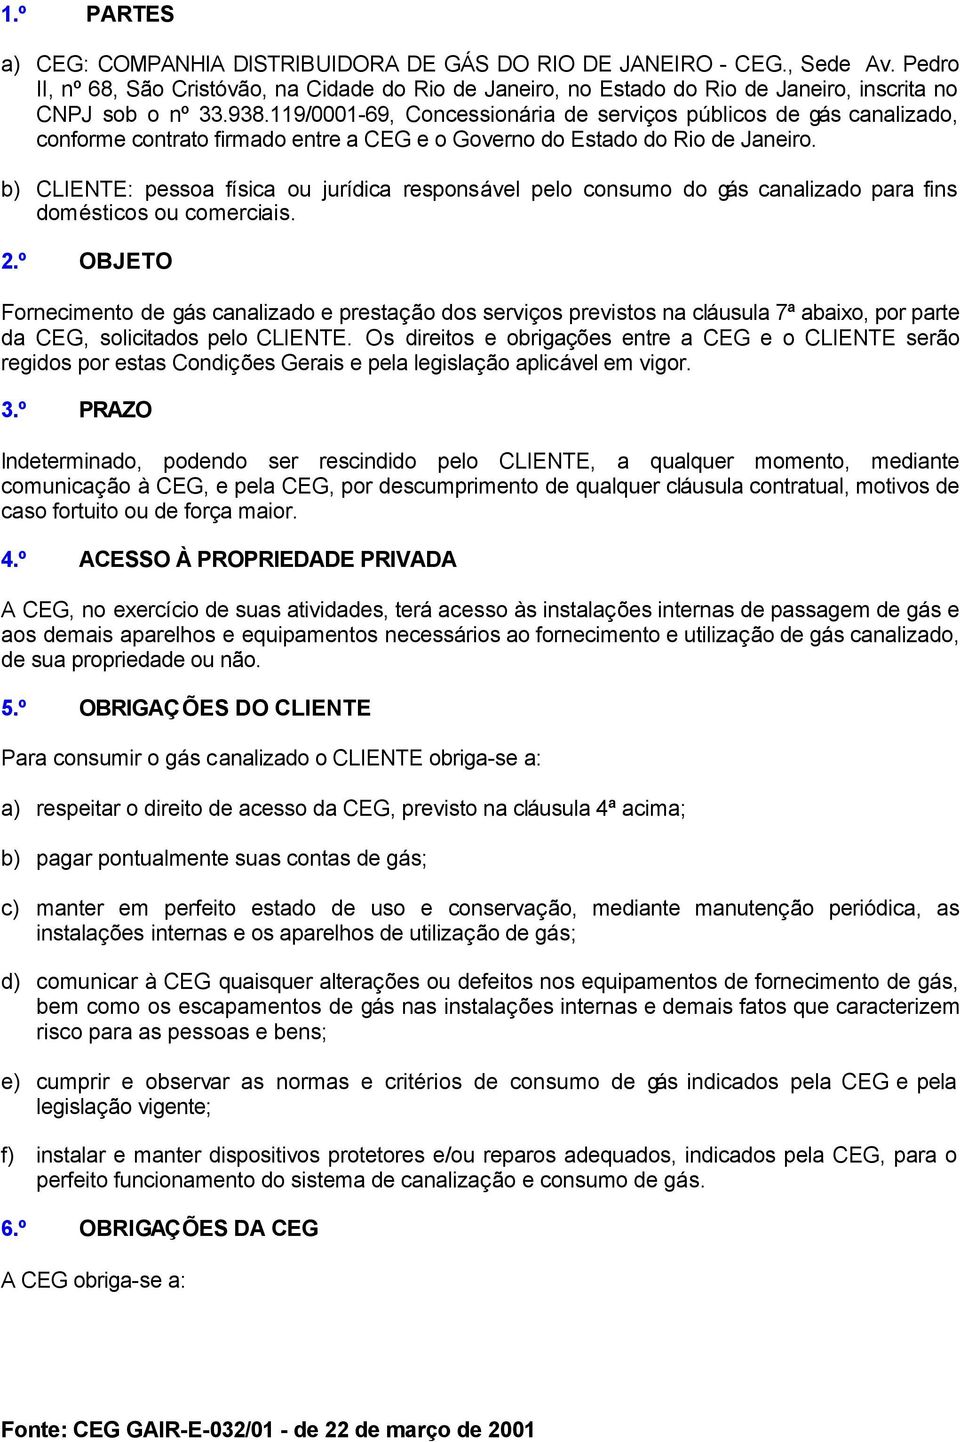 119/0001-69, Concessionária de serviços públicos de gás canalizado, conforme contrato firmado entre a CEG e o Governo do Estado do Rio de Janeiro.